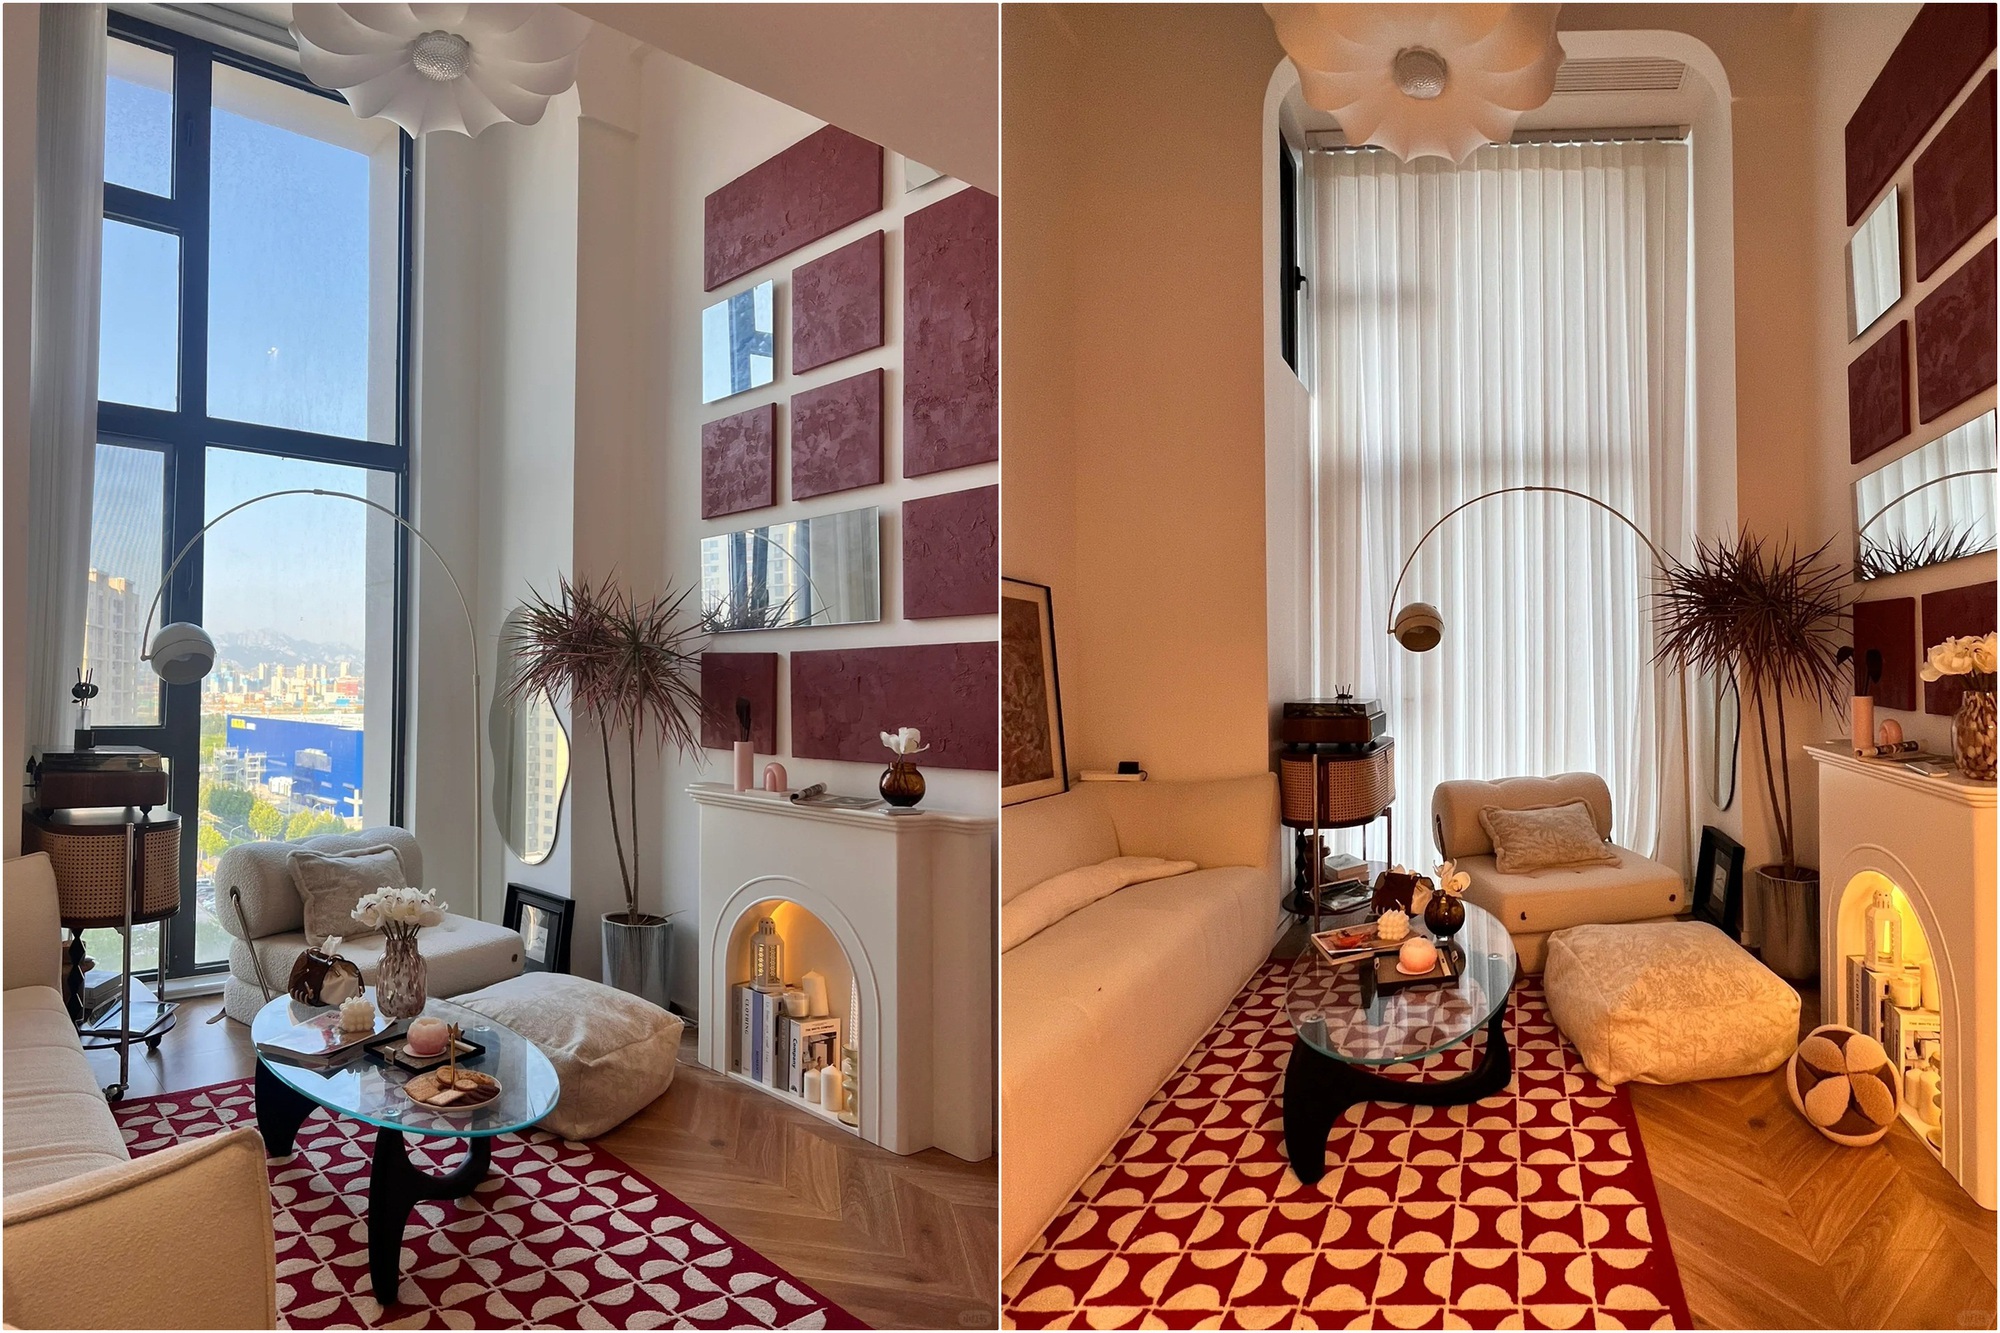 Cải tạo thành công căn hộ gác xép rộng 30m² gây ấn tượng với vẻ đẹp hiện đại, ấm áp - Ảnh 5.